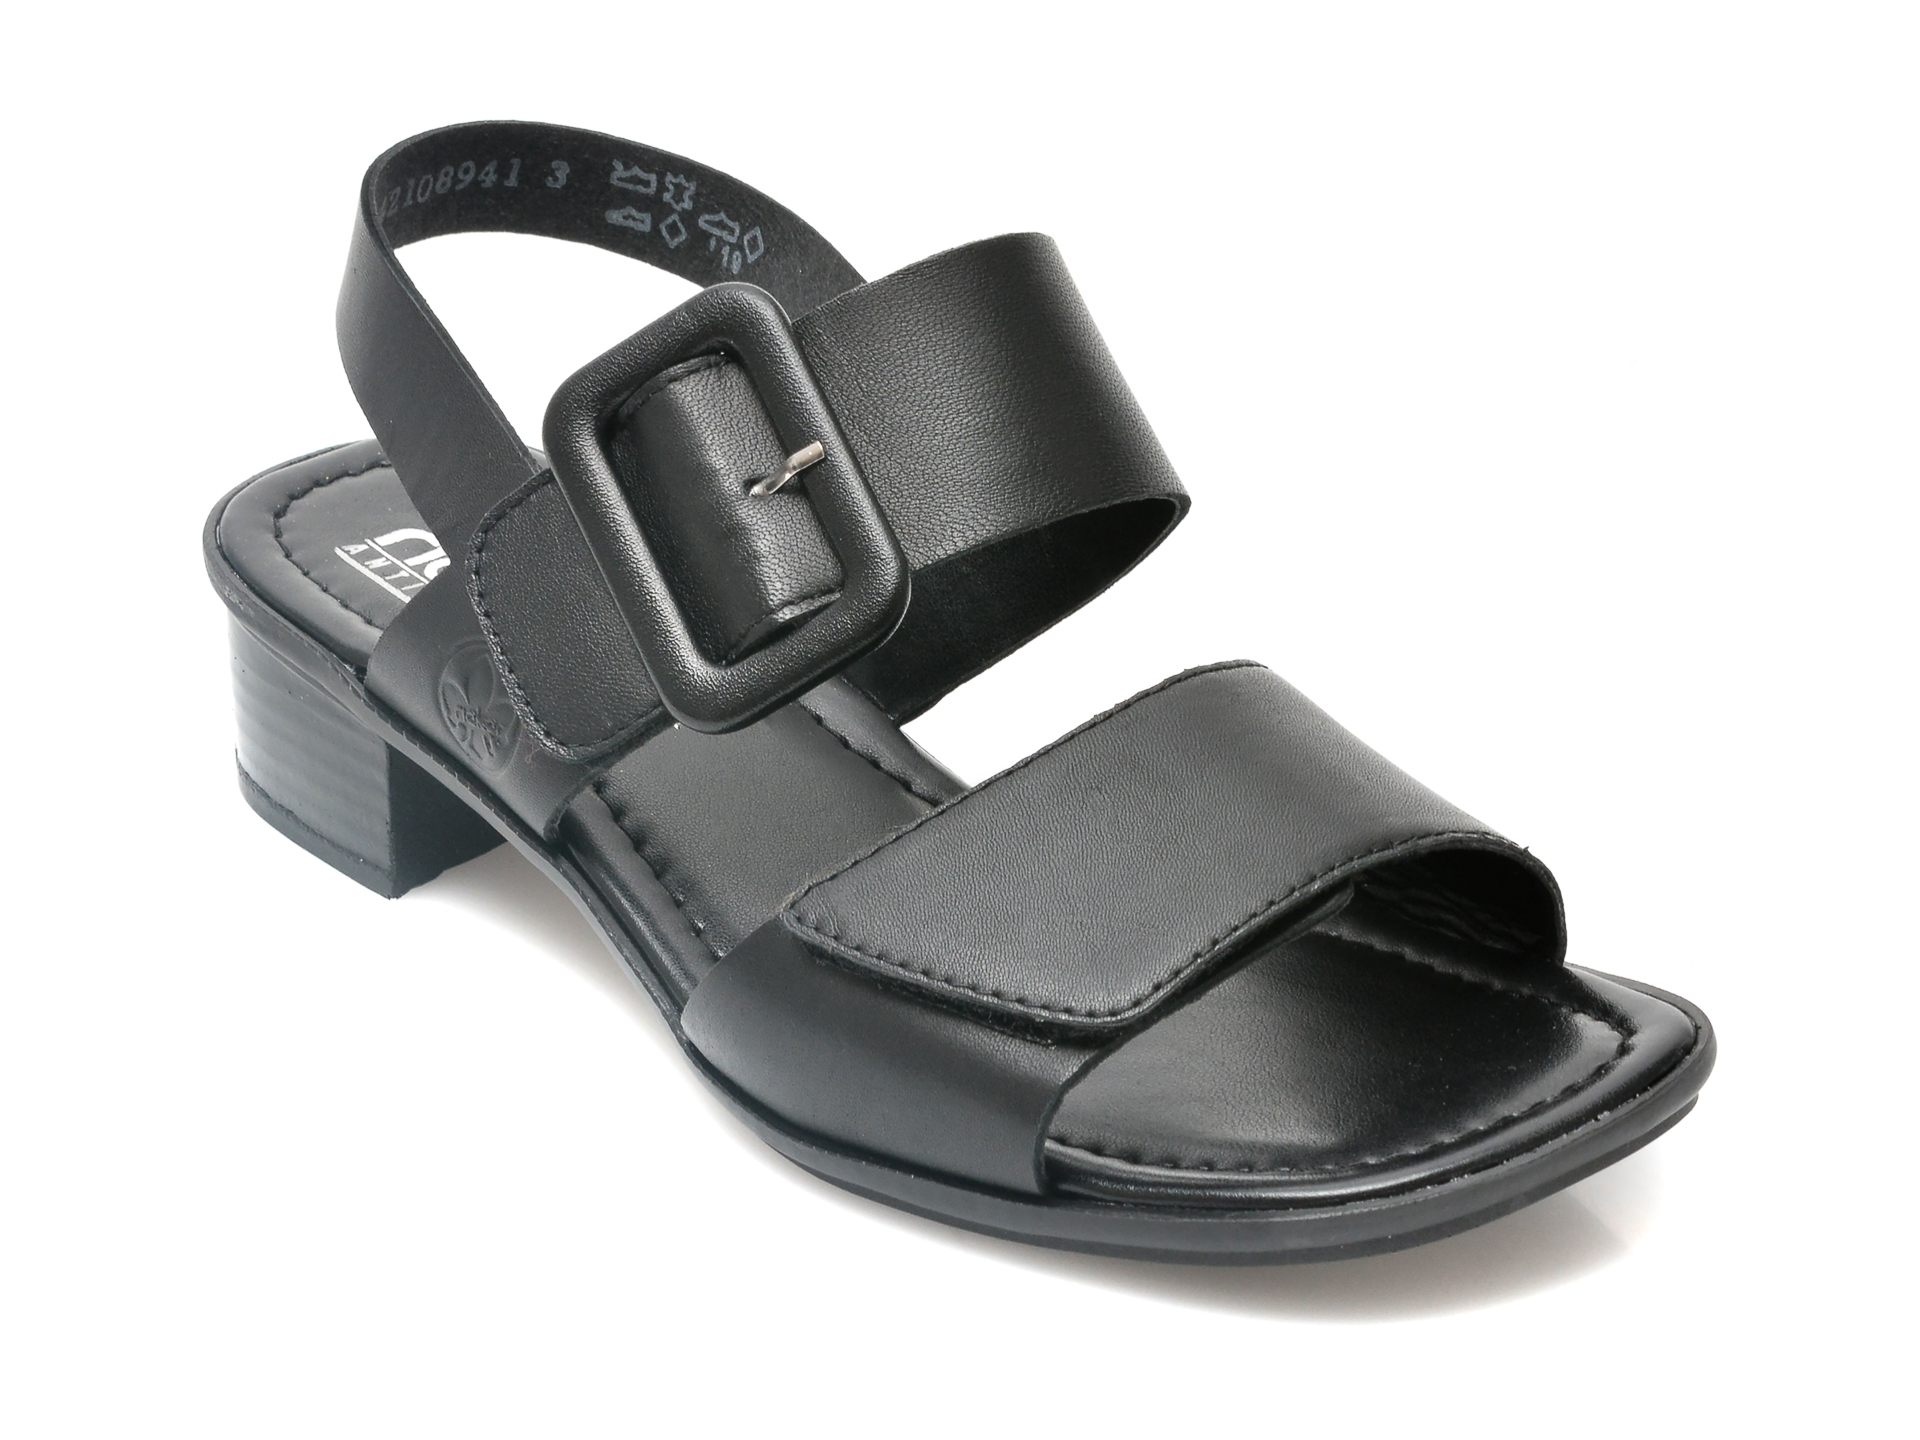 Sandale RIEKER negre, 62663, din piele naturala otter.ro otter.ro